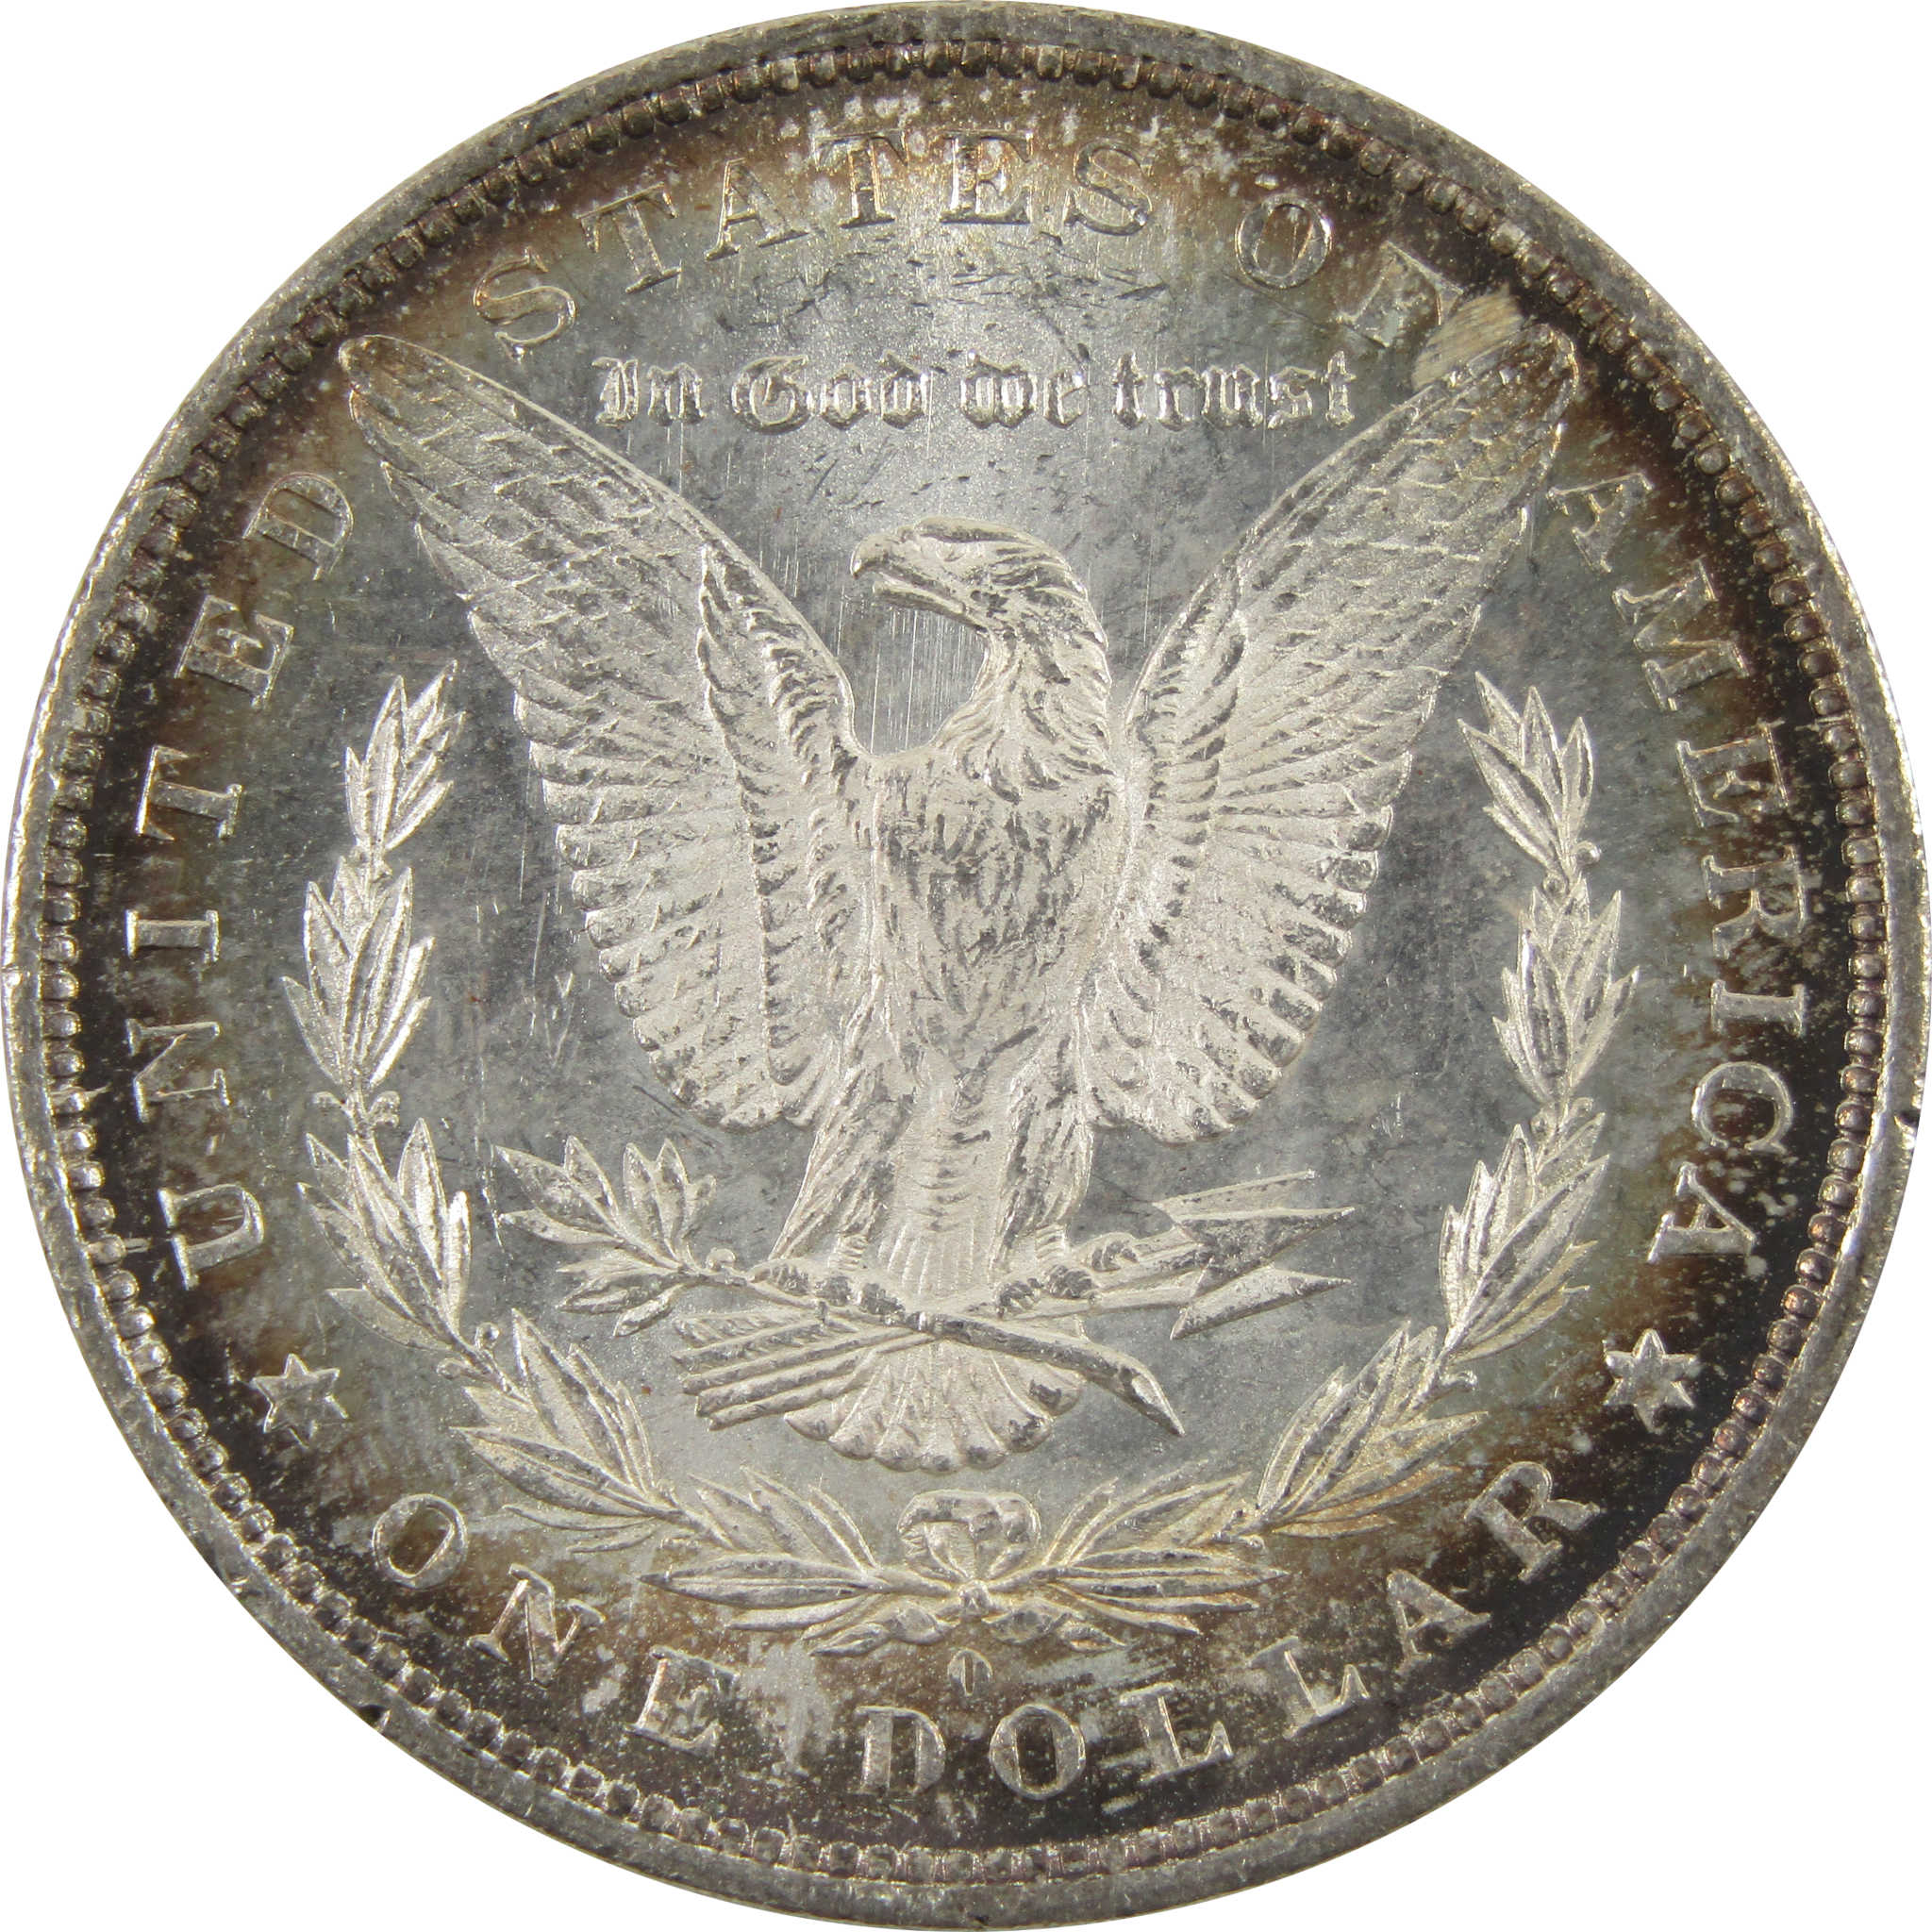 1883 O Morgan Dollar BU Uncirculated 90% Silver $1 Coin SKU:I11102 - Morgan coin - Morgan silver dollar - Morgan silver dollar for sale - Profile Coins &amp; Collectibles